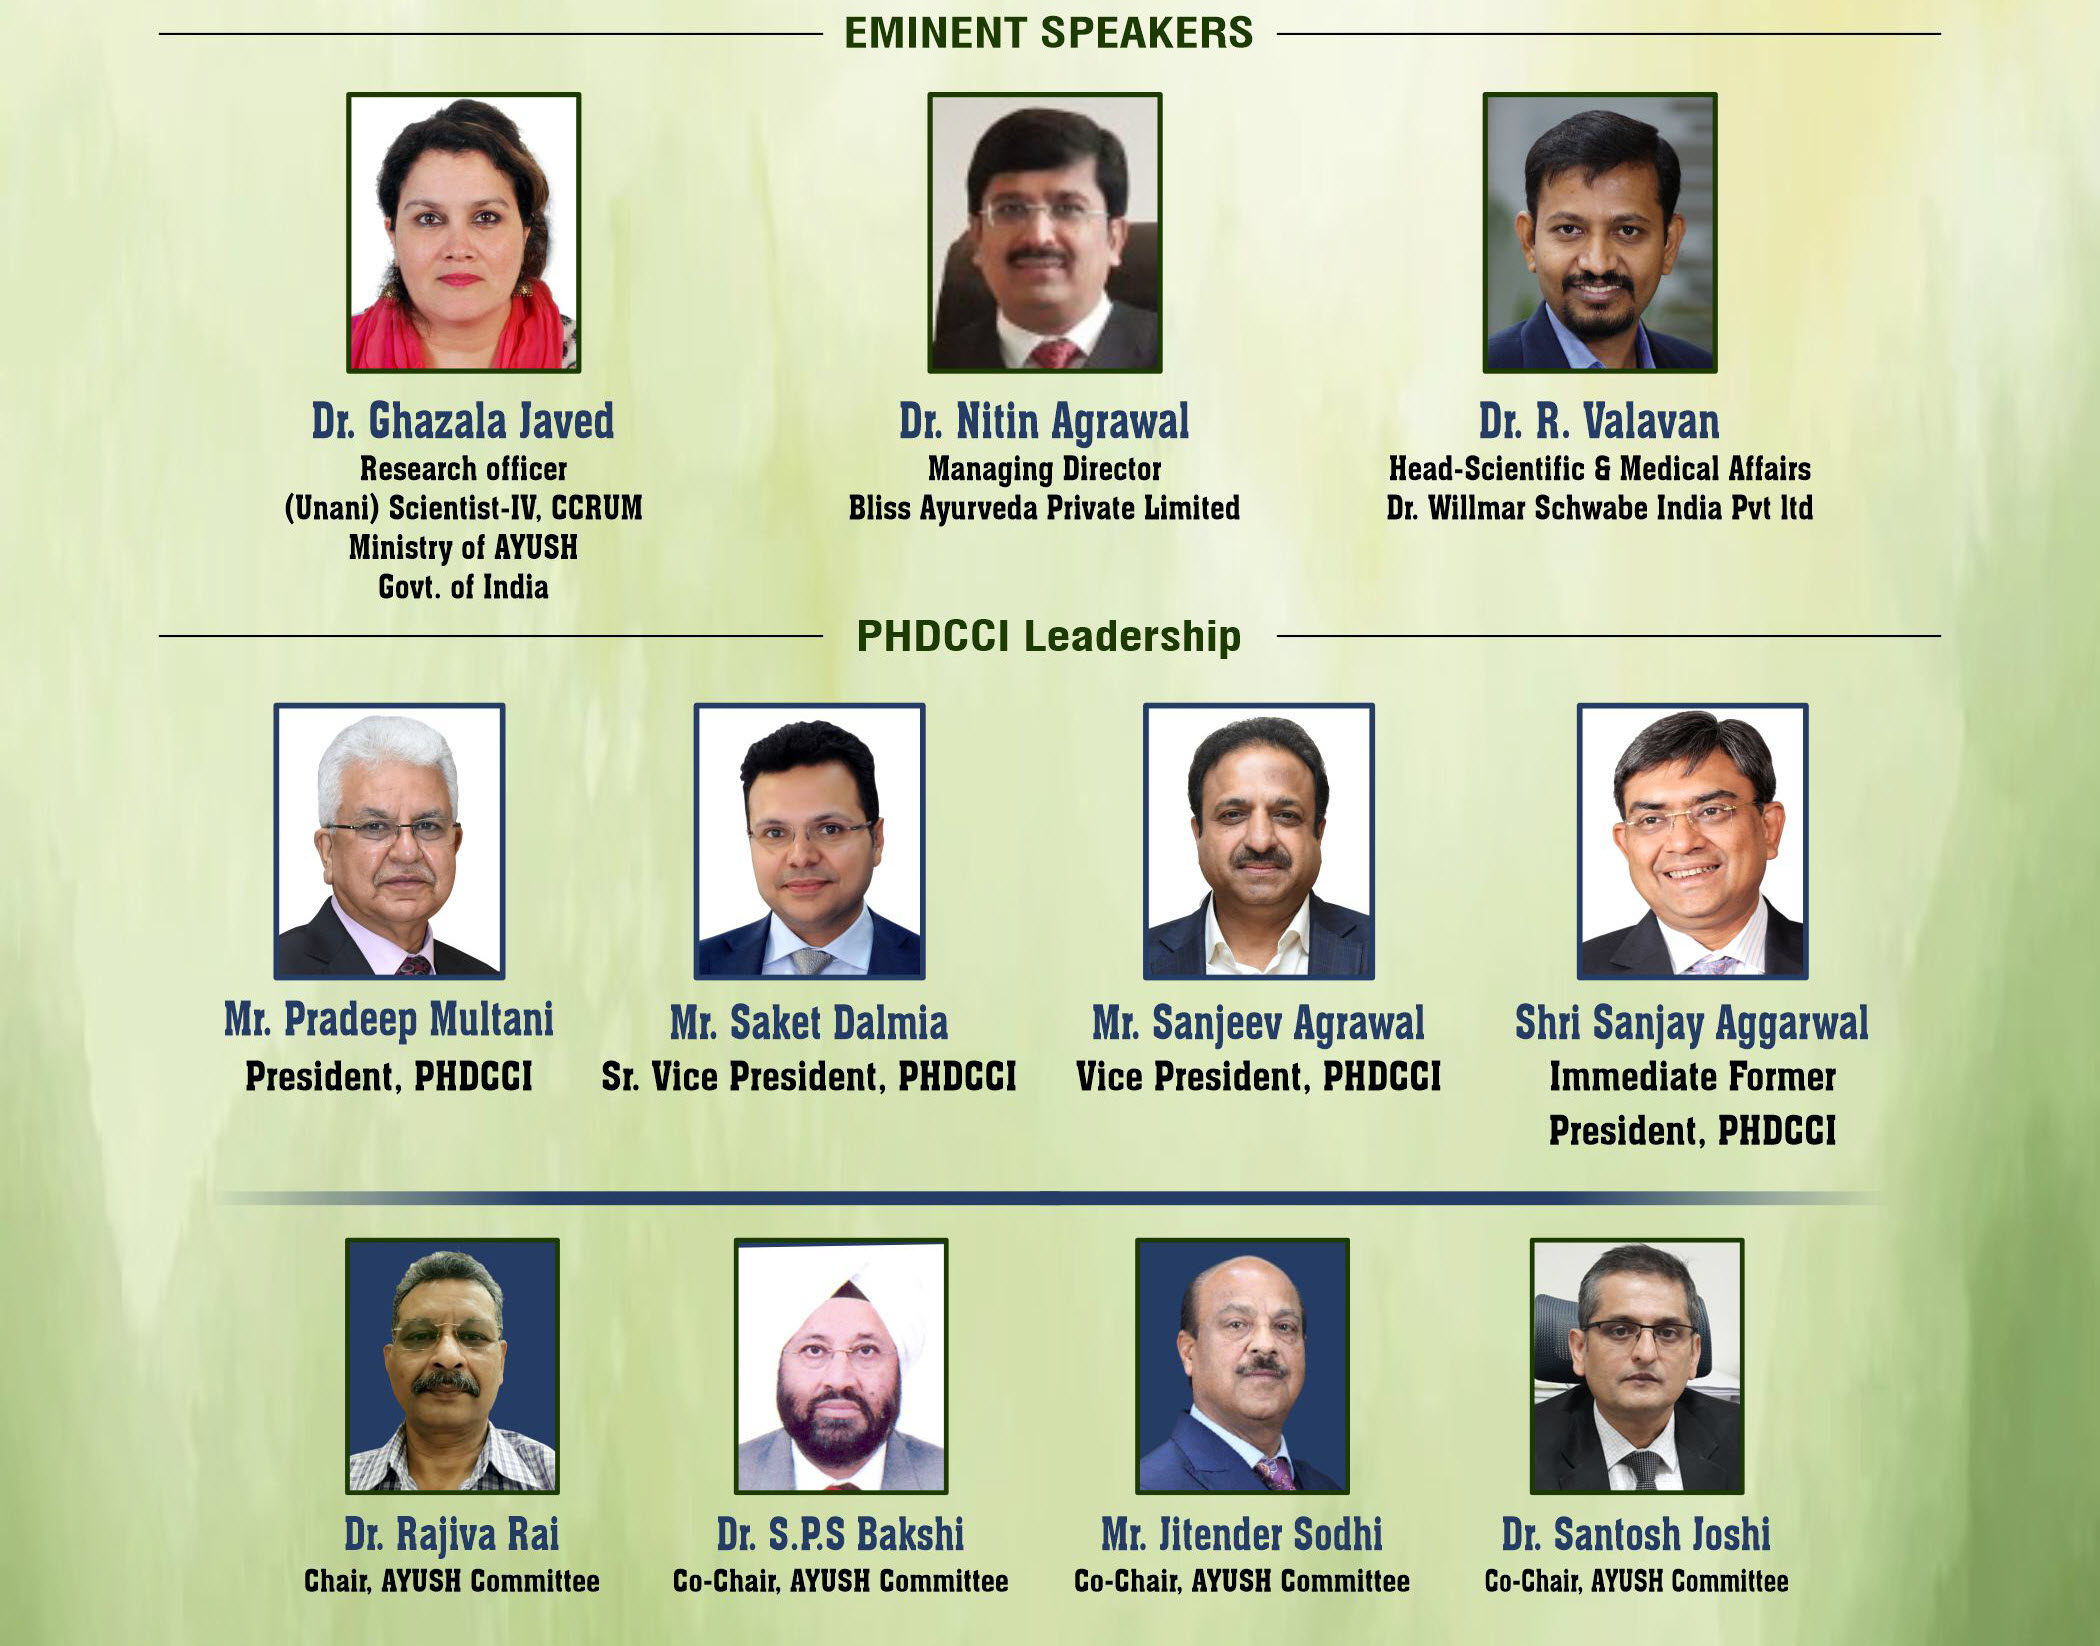 eminent speakers